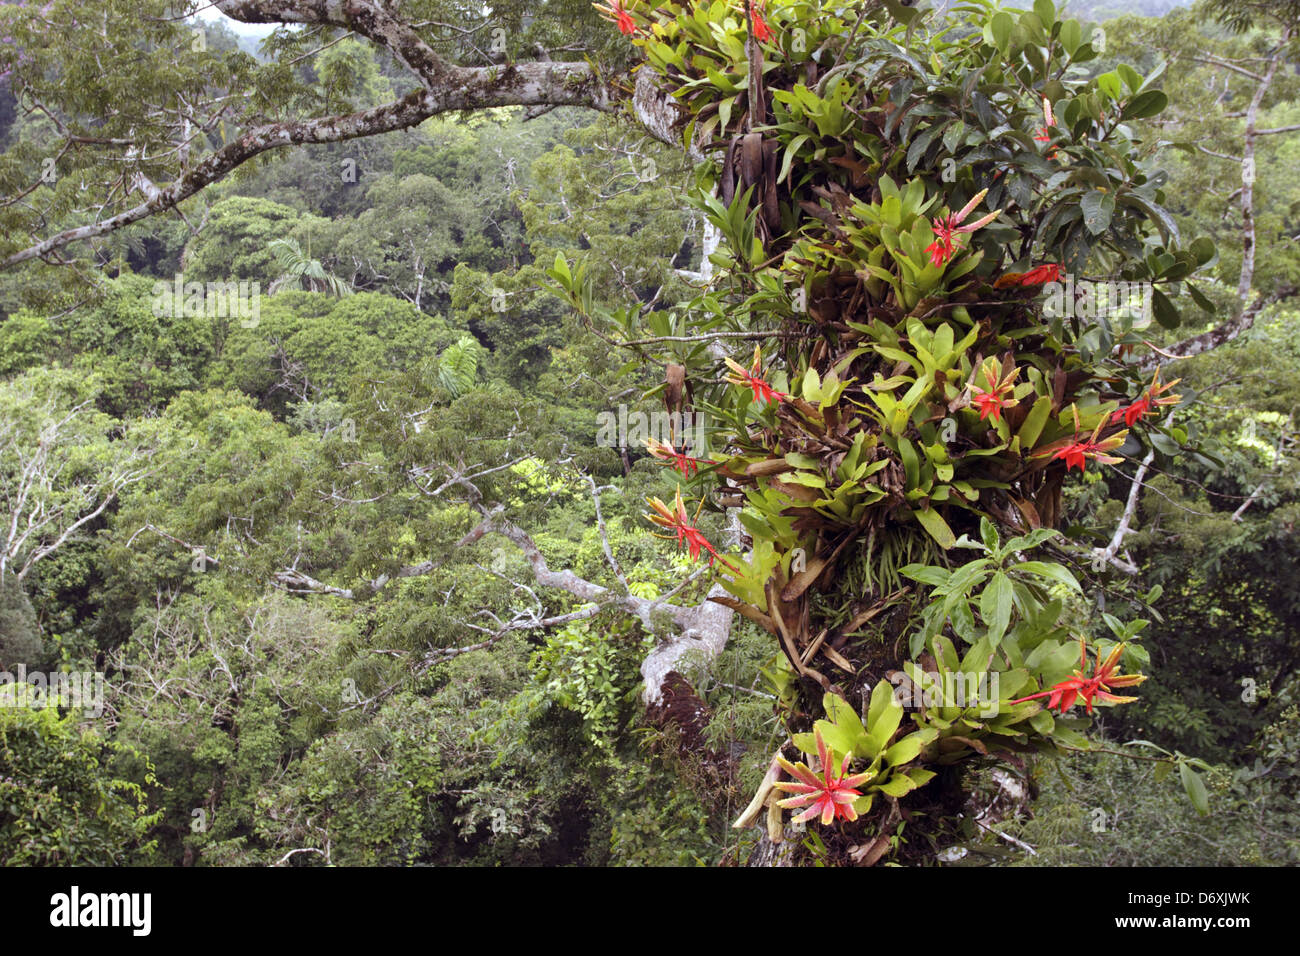 Bromeliads croissant sur une branche d'un grand arbre Ceibo au-dessus de la forêt vierge, de l'Équateur. Banque D'Images